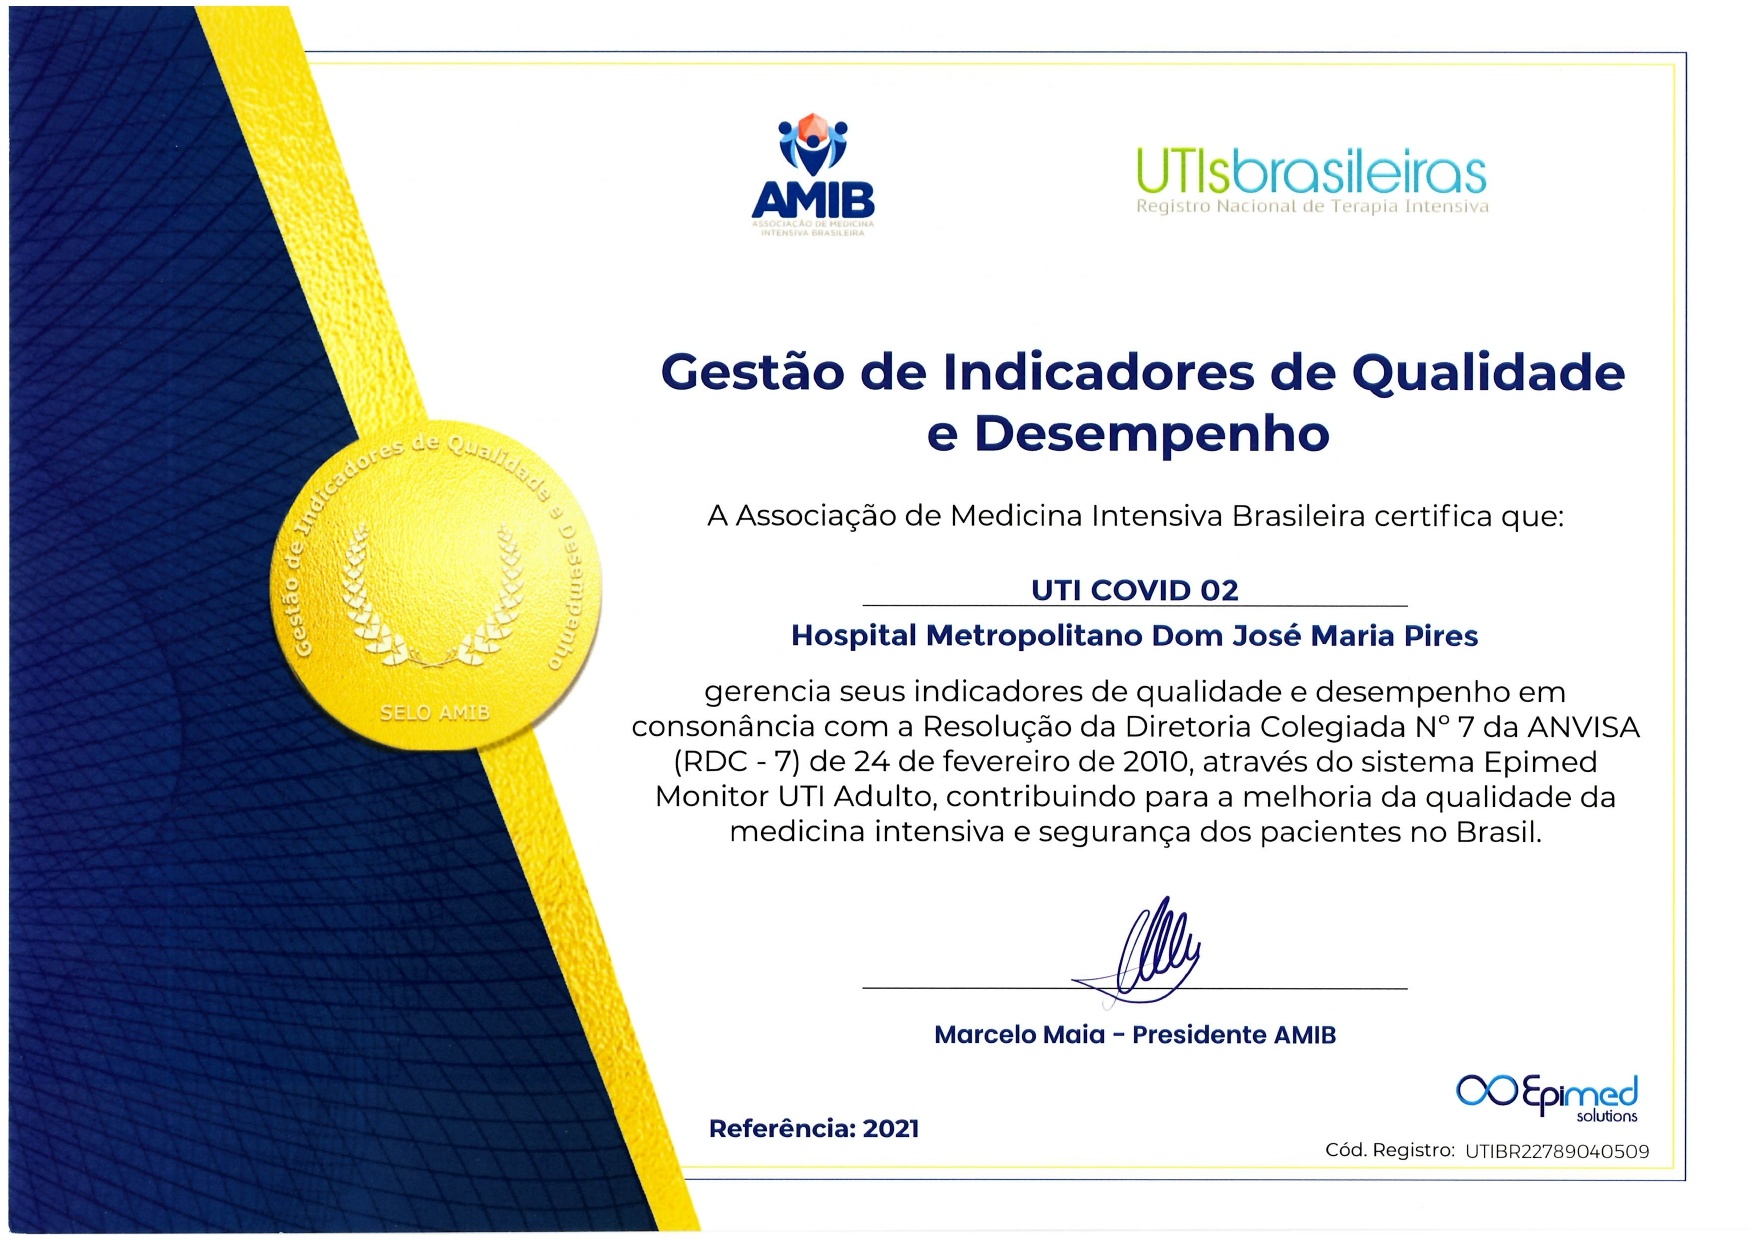 Hospital Metropolitano recebe segundo Selo de Gestão de Indicadores de Qualidade e Desempenho pela Amib 3.jpg